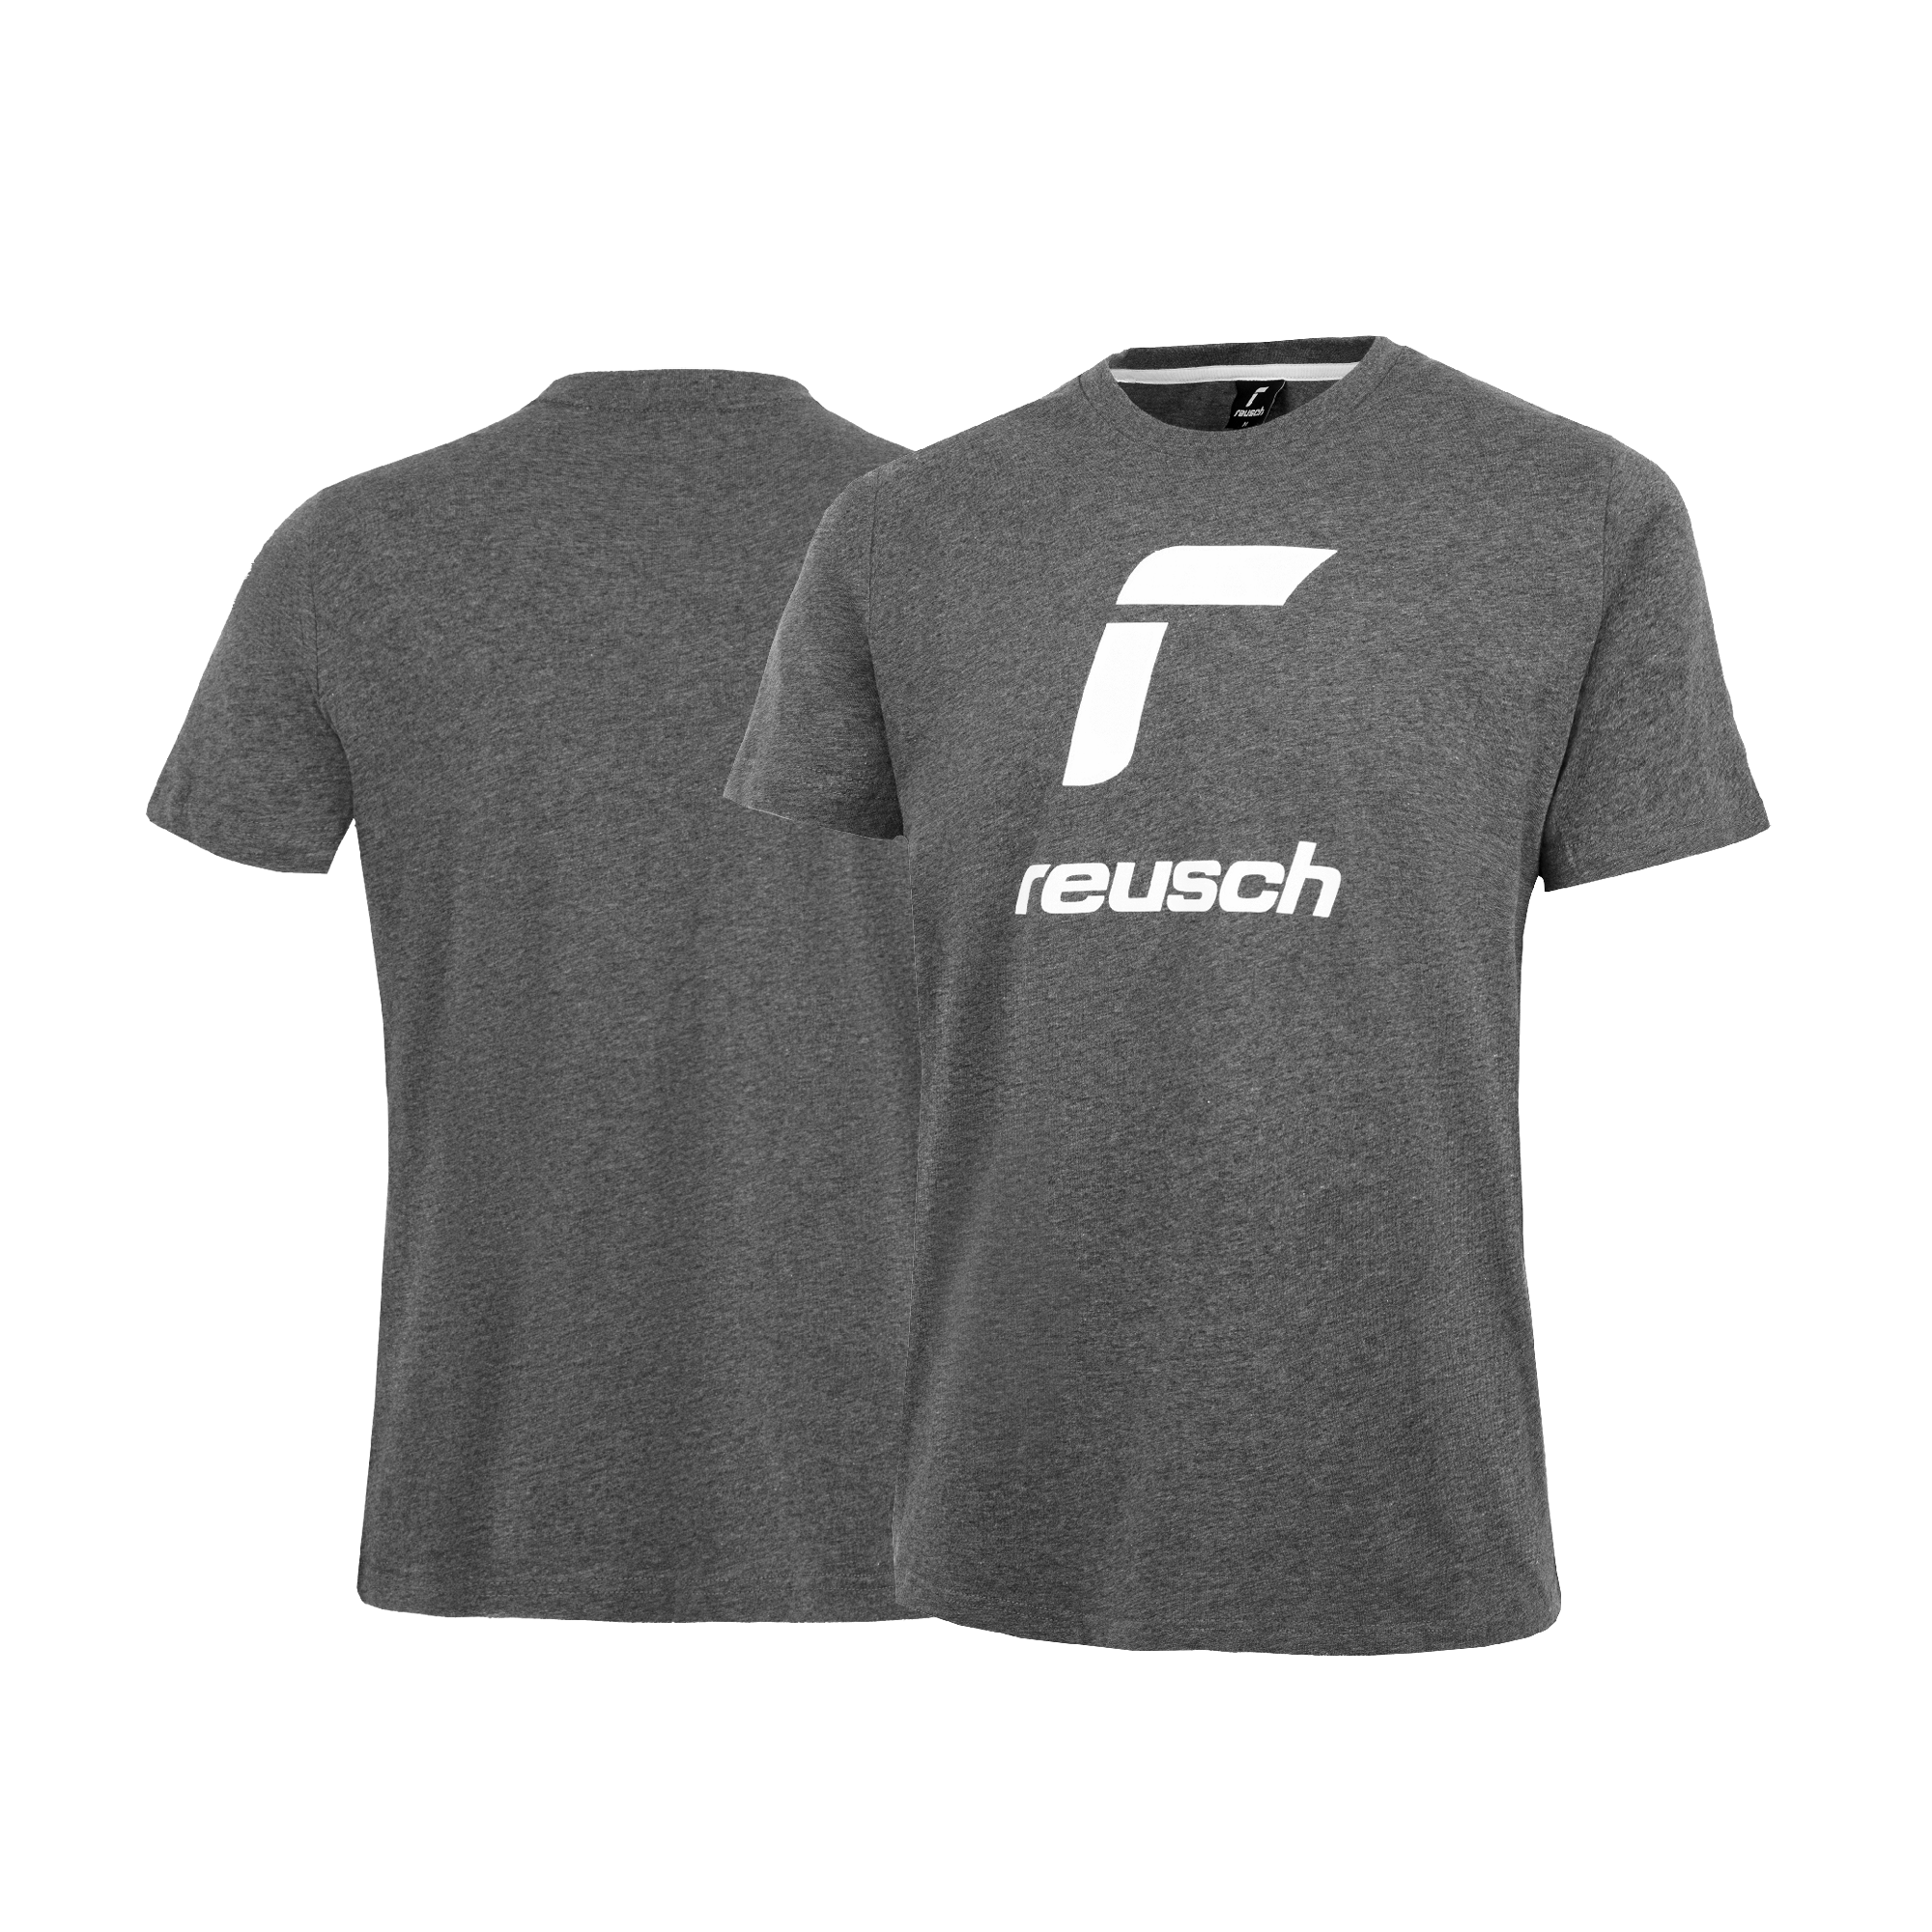 Reusch T-Shirt